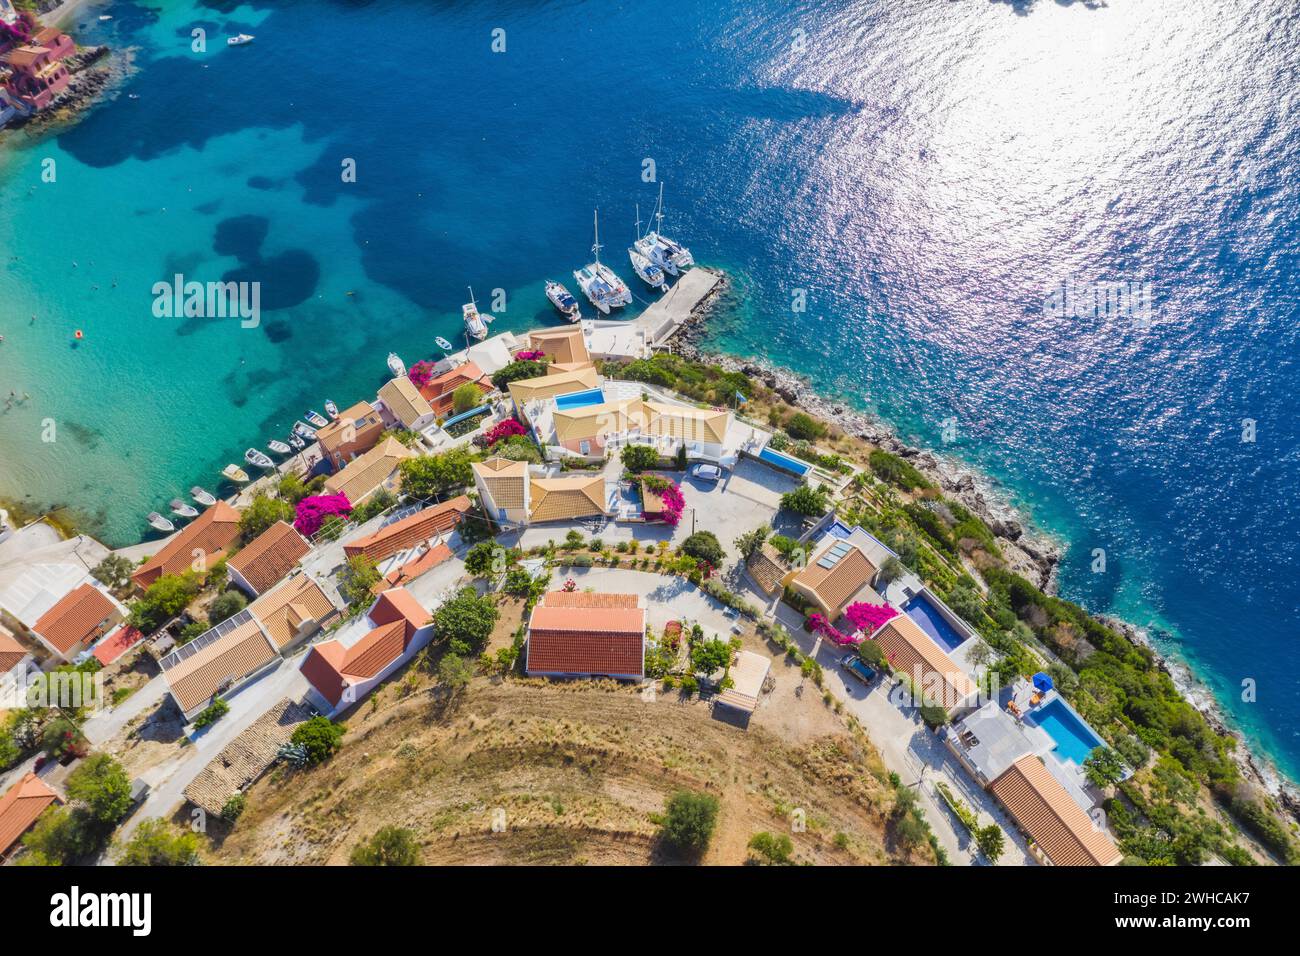 Assos pittoresque village de pêcheurs d'en haut, Kefalonia, Grèce.Vue aérienne de drone.Bateaux à voile amarrés dans la baie turquoise. Banque D'Images